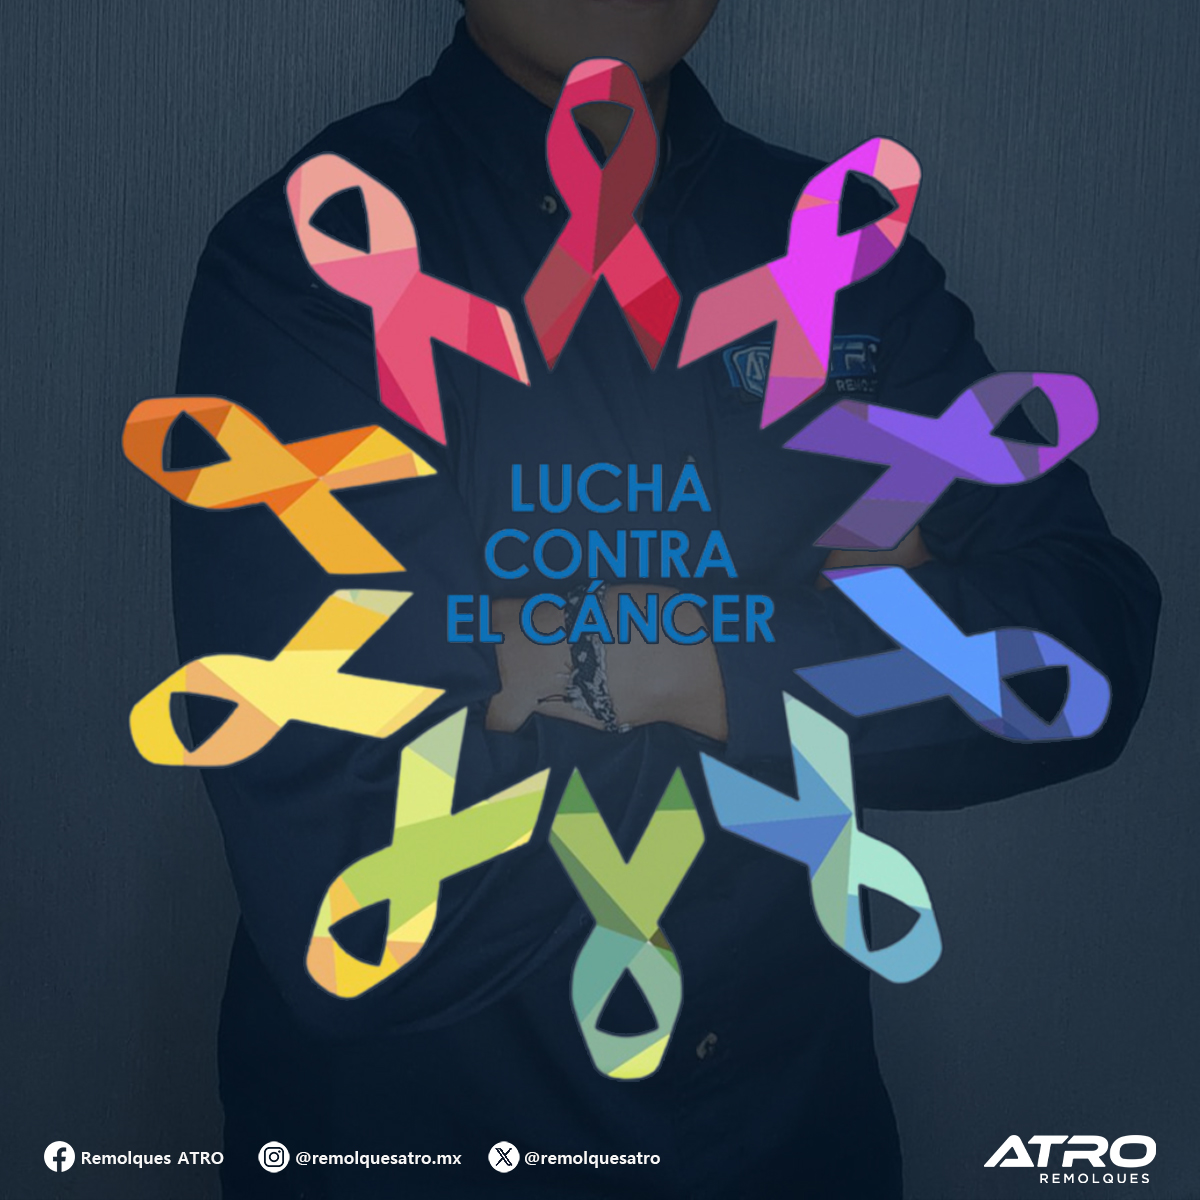 ¡El día de hoy conmemoramos la lucha contra el cáncer!

Siendo una de las principales causas de muerte en todo el mundo, hagamos consciencia sobre este padecimiento y avancemos juntos para prevenir y controlar esta enfermedad.
#CuidemonosTodos